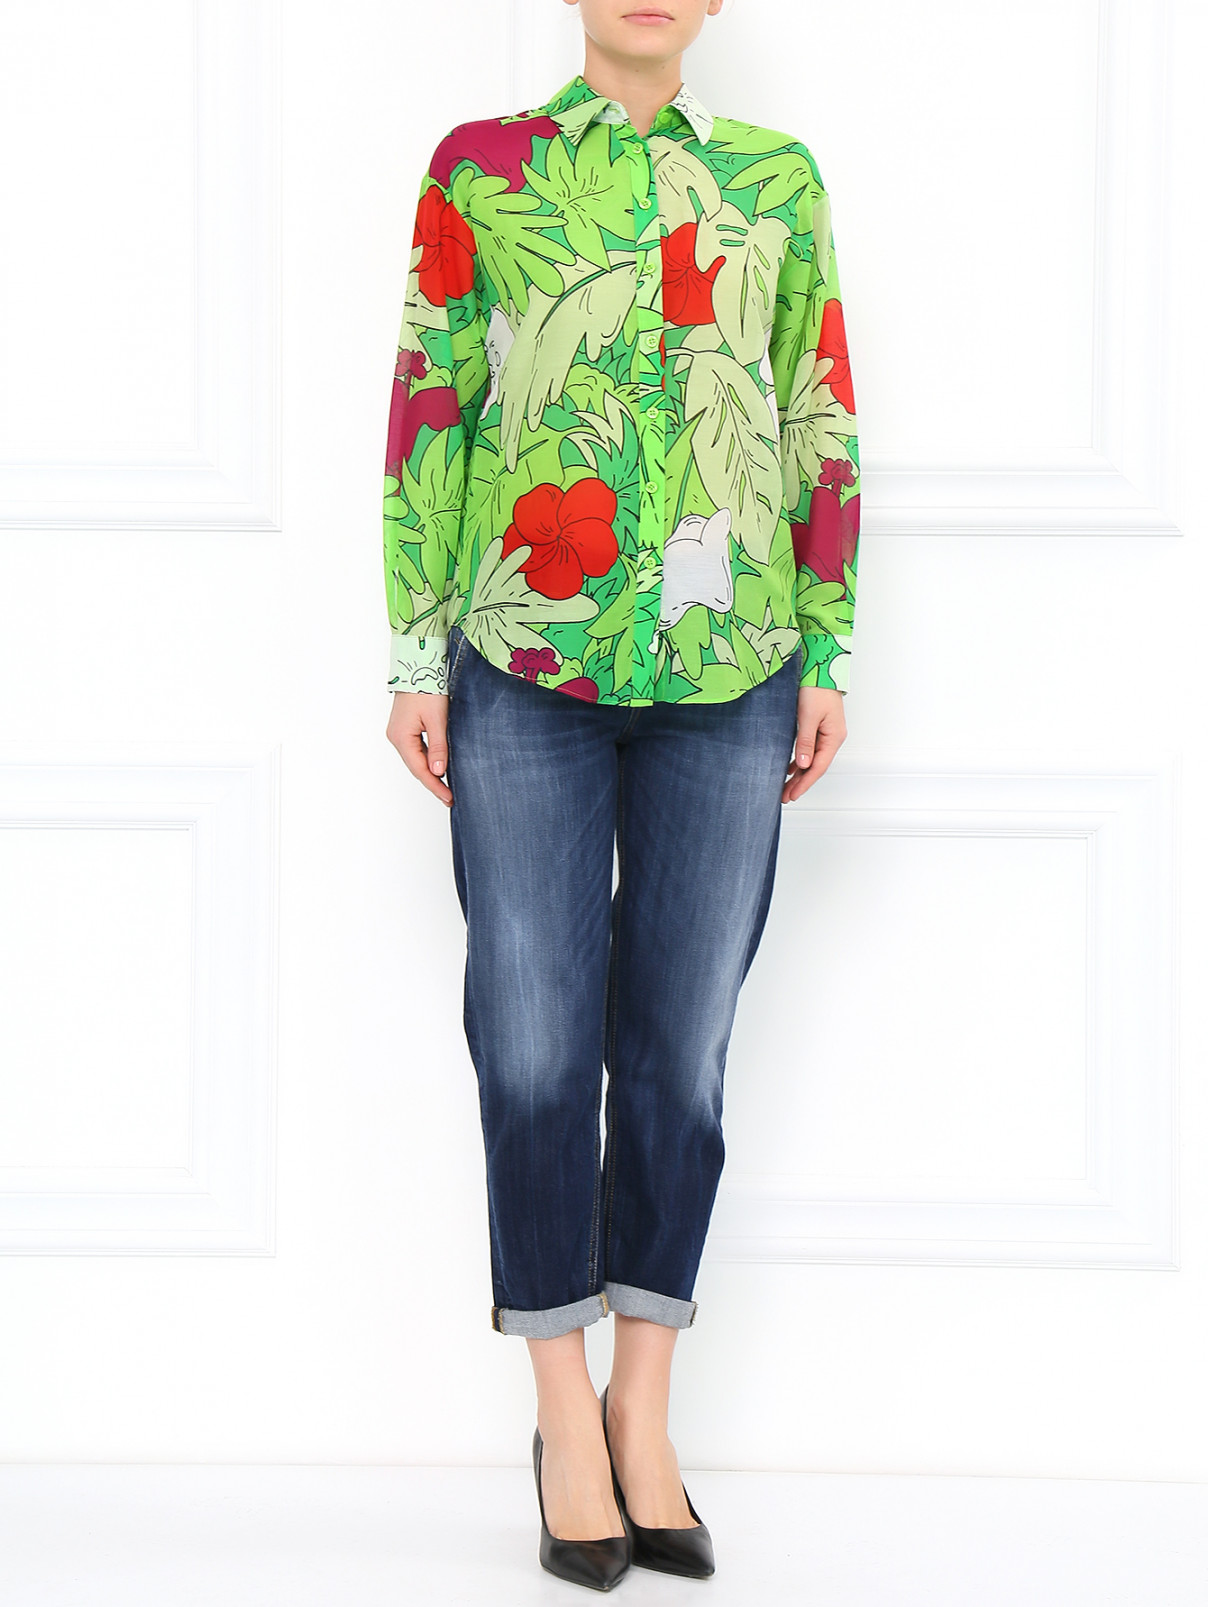 Блуза из шелка и хлопка с цветочным принтом Moschino Cheap&Chic  –  Модель Общий вид  – Цвет:  Зеленый